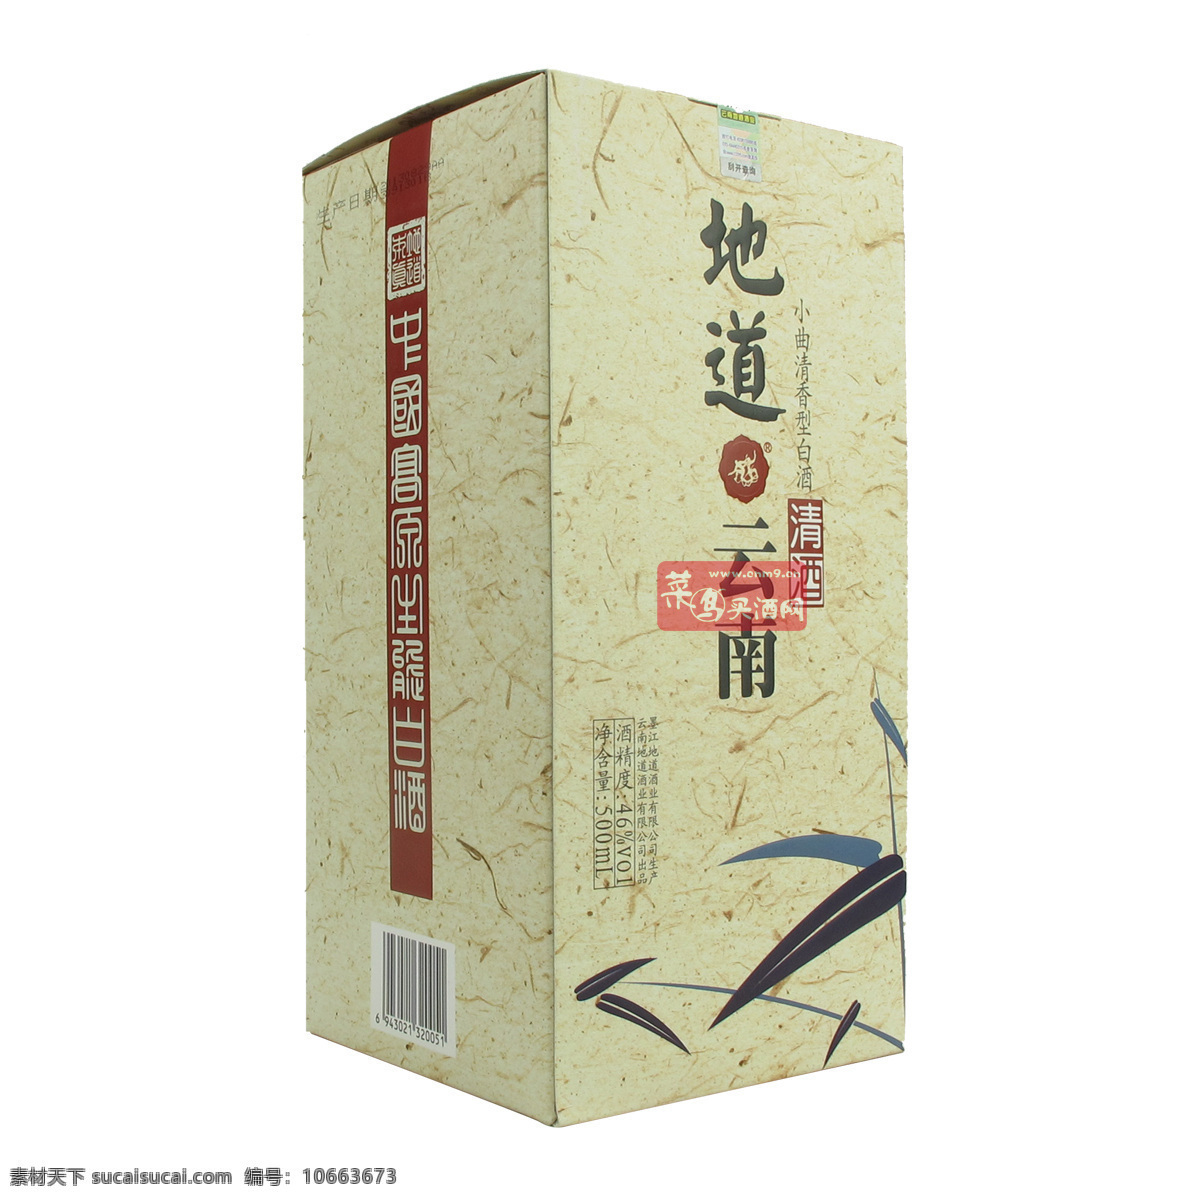 白酒包装设计 白酒 包装 展示 贵州 云南 文化艺术